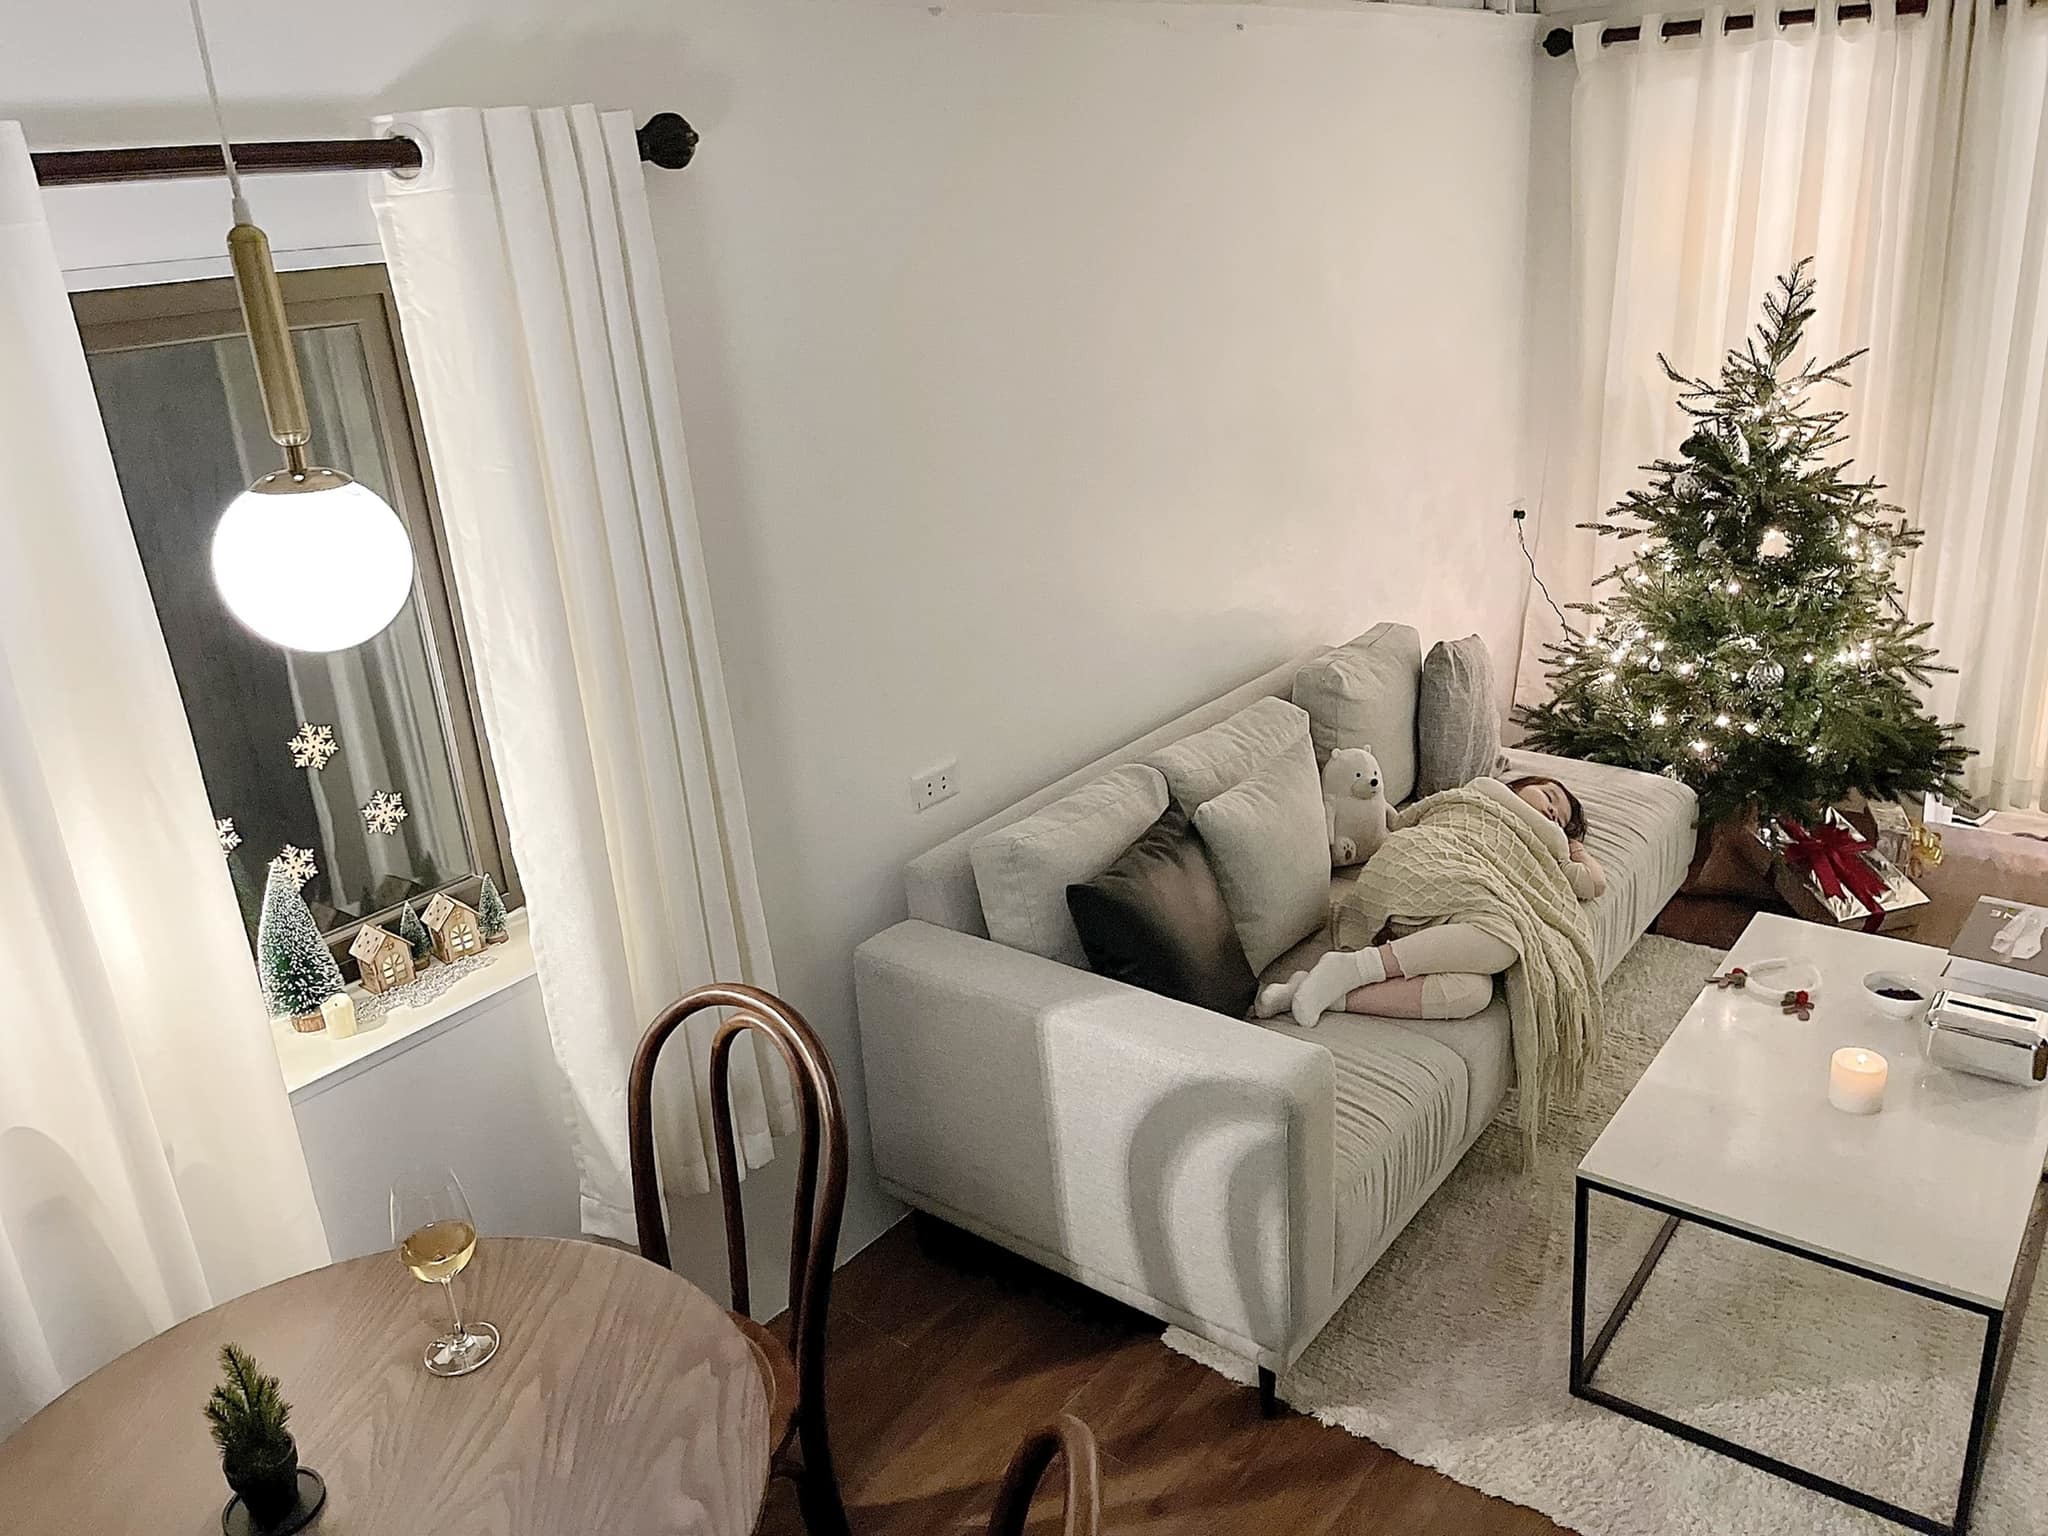 Trang trí nhà đón Giáng sinh đơn giản nhưng ấm cúng của bà mẹ một con Hải Phòng